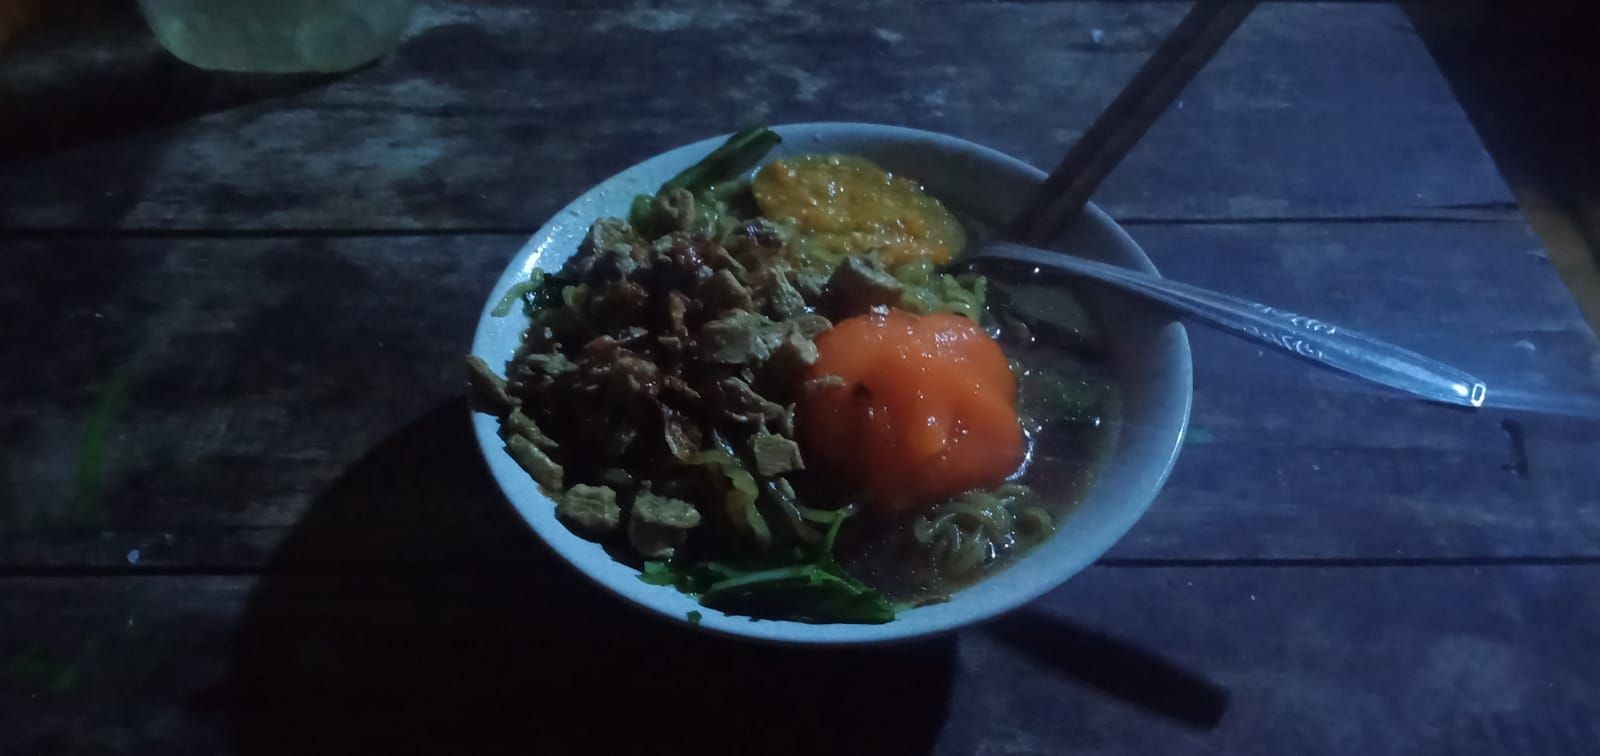 Mie Ayam Pak Darmo Kalilandak Banjarnegara, Mie'nya Lembut, Terasa Ayam dan Bumbu Bawangnya, Wajib Dicoba..